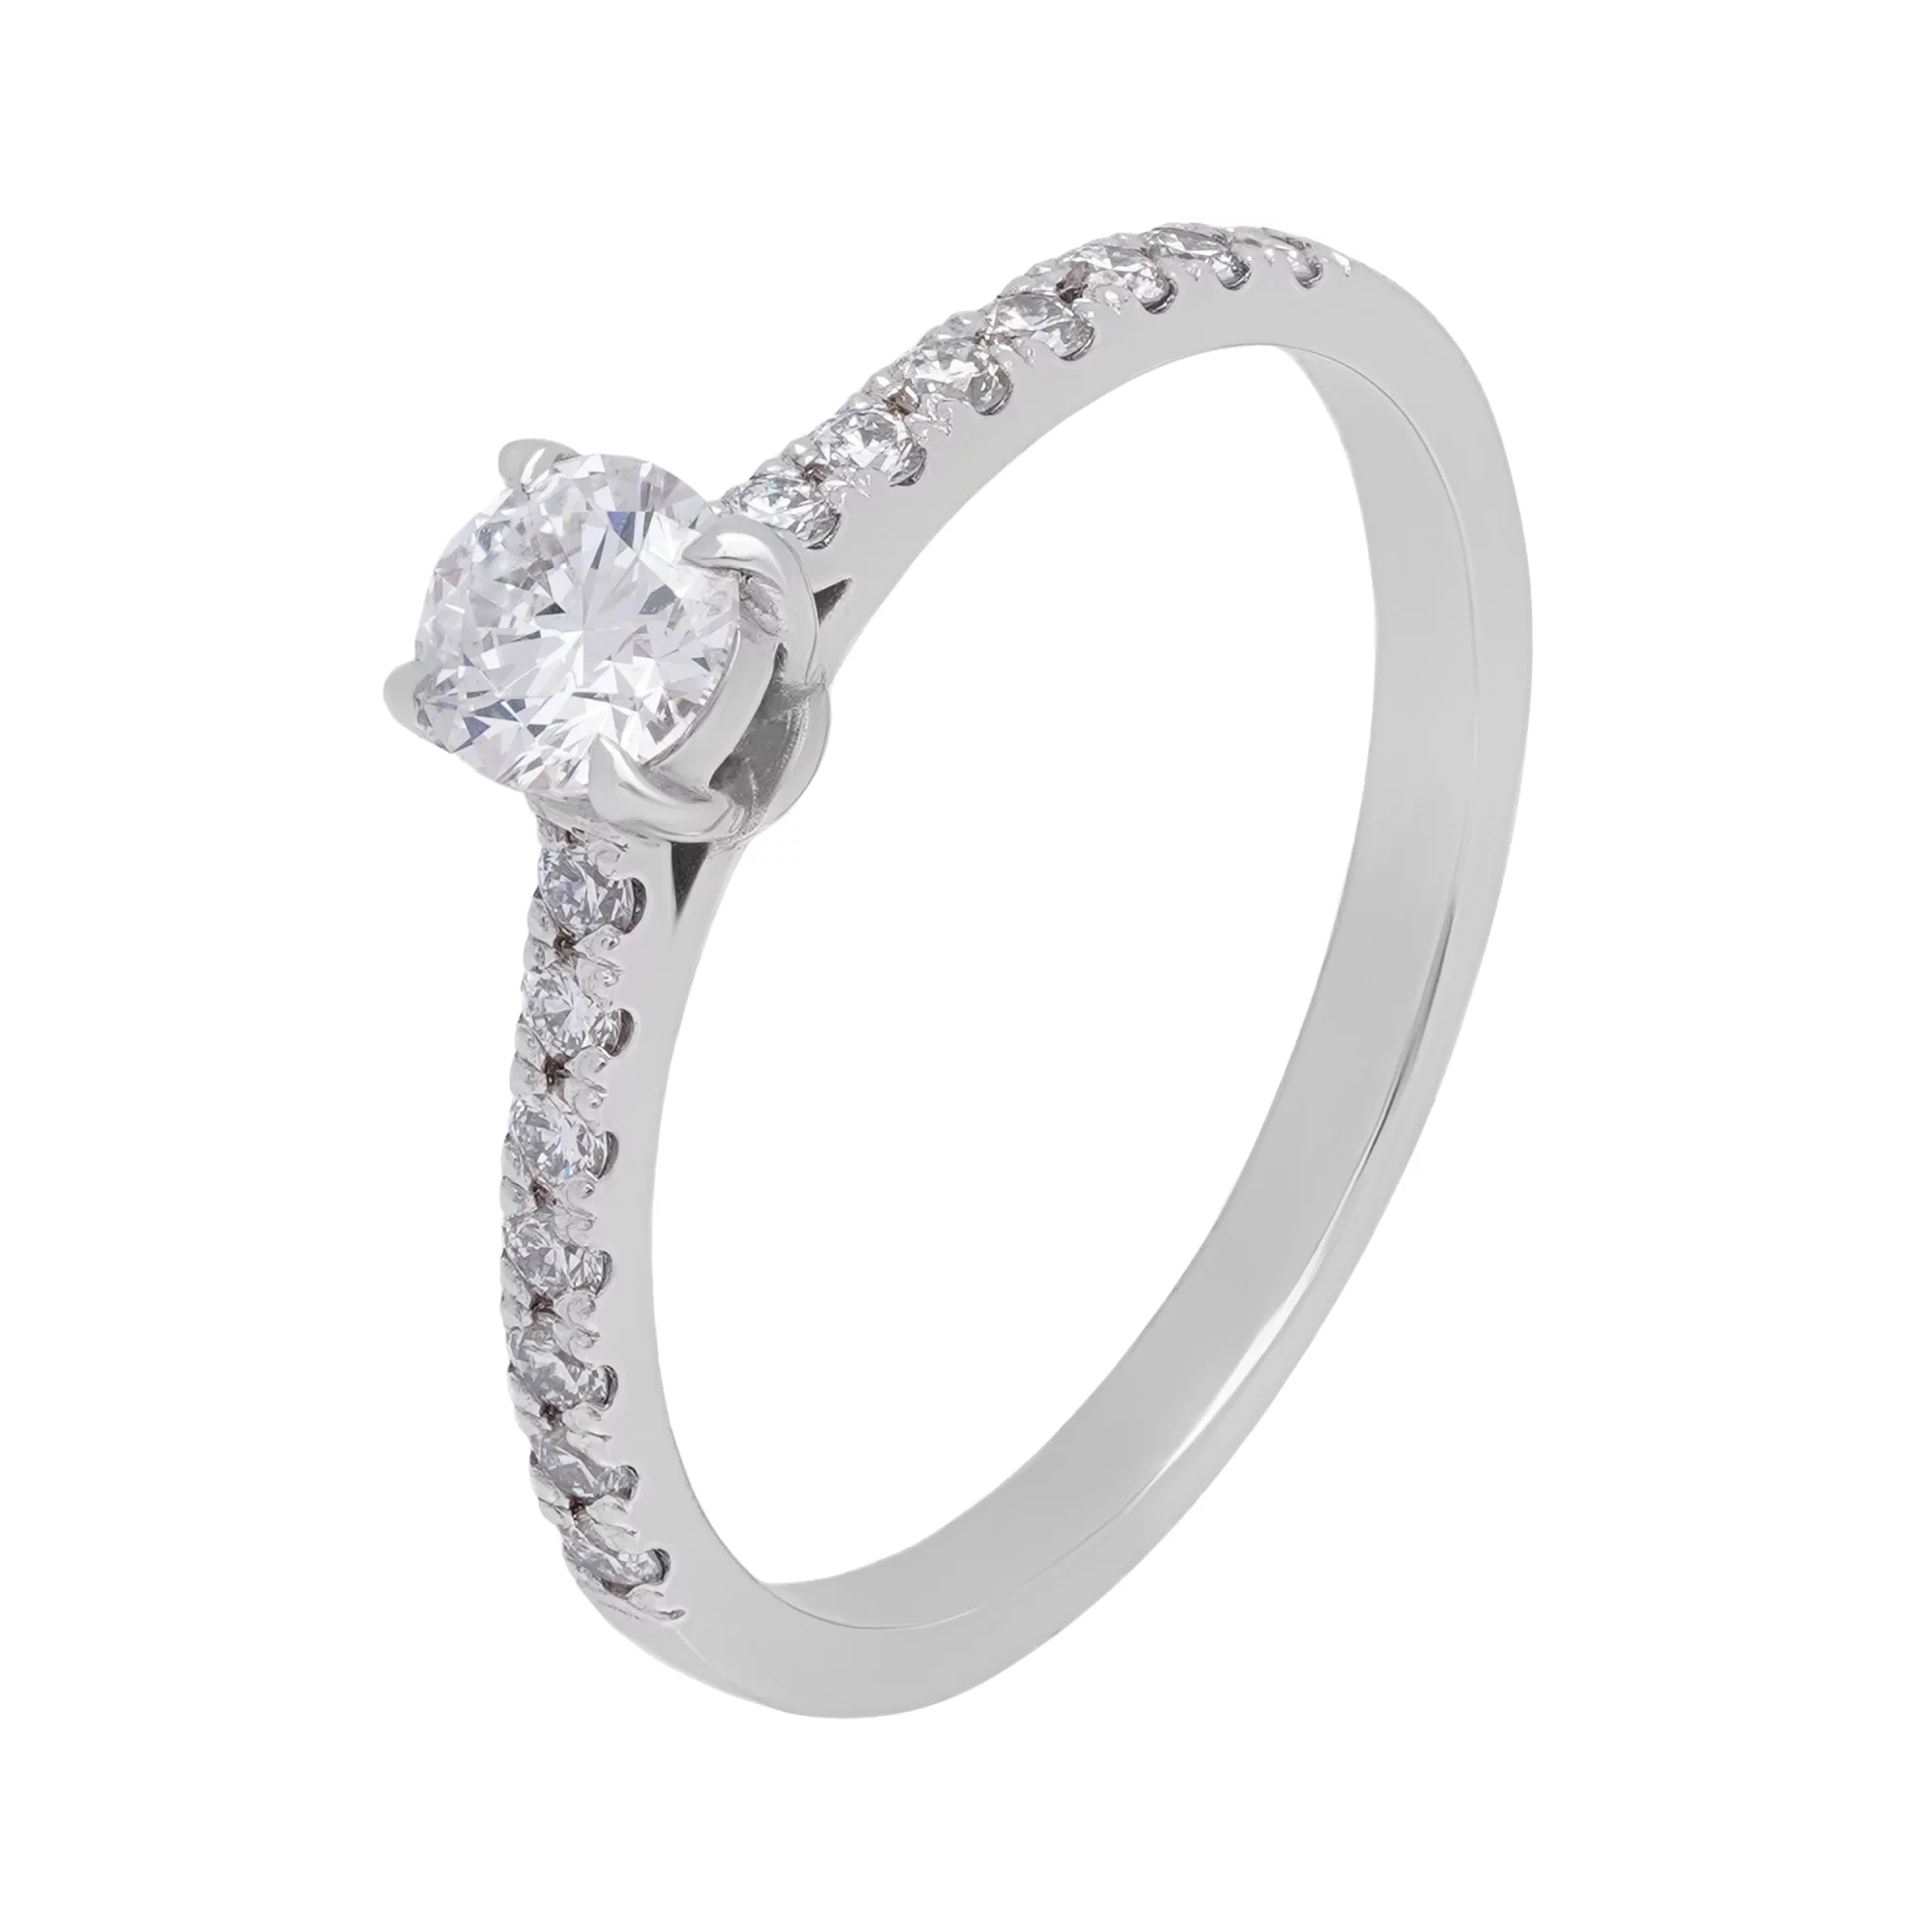 Тонкое кольцо с бриллиантом для помолвки из белого золота - 1644001 – изображение 1